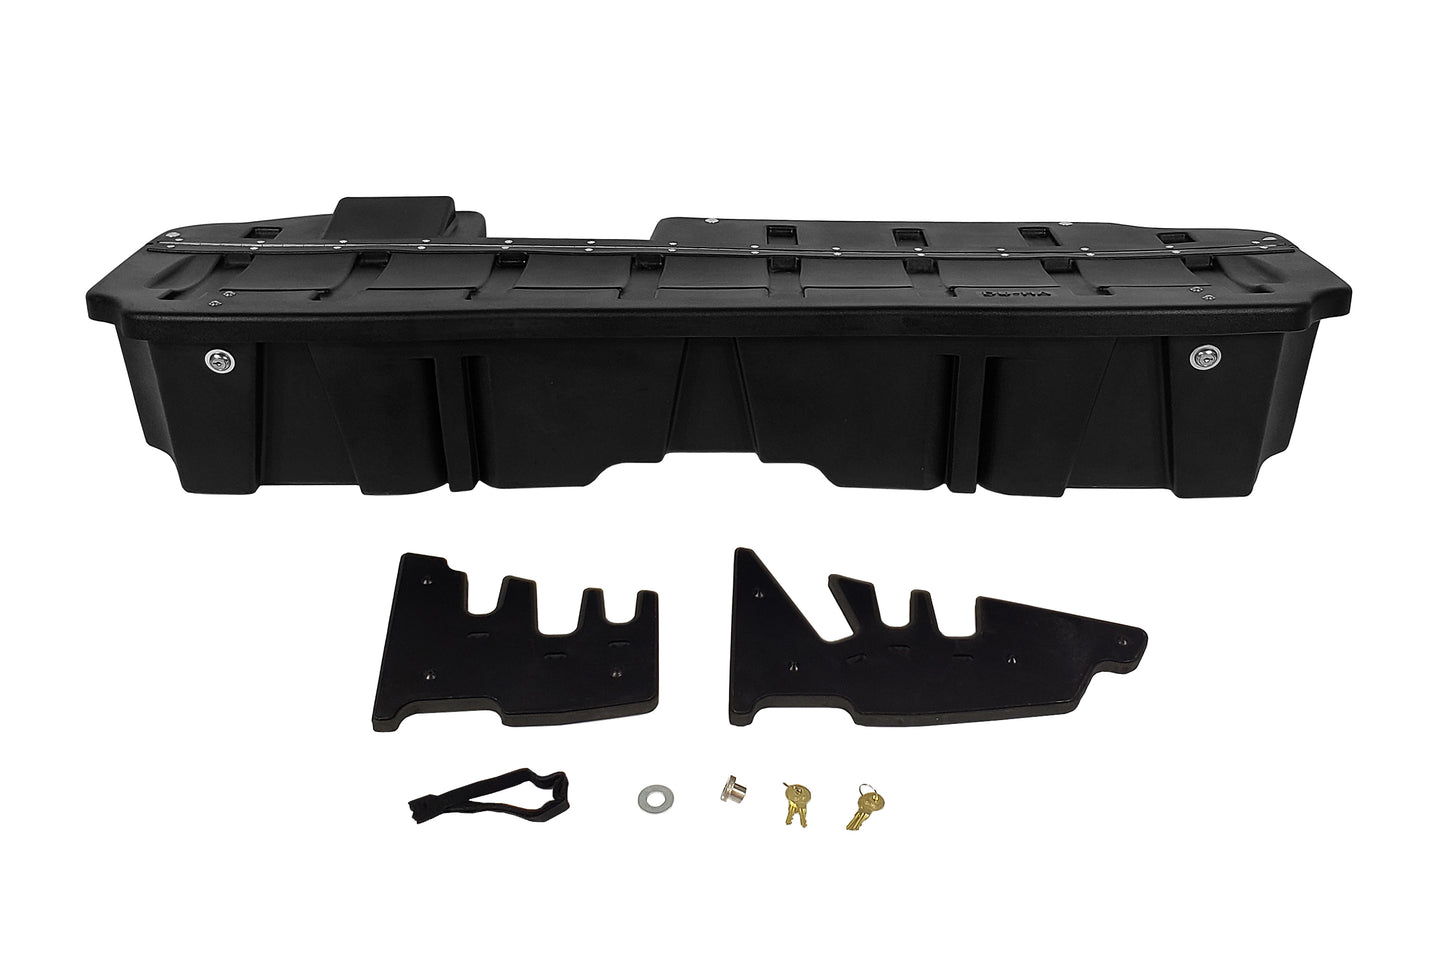 DU-HA 10410 Chevrolet/GMC Lockbox - Underseat Storage Organizer And Gun Case With Lockable Lid - Black